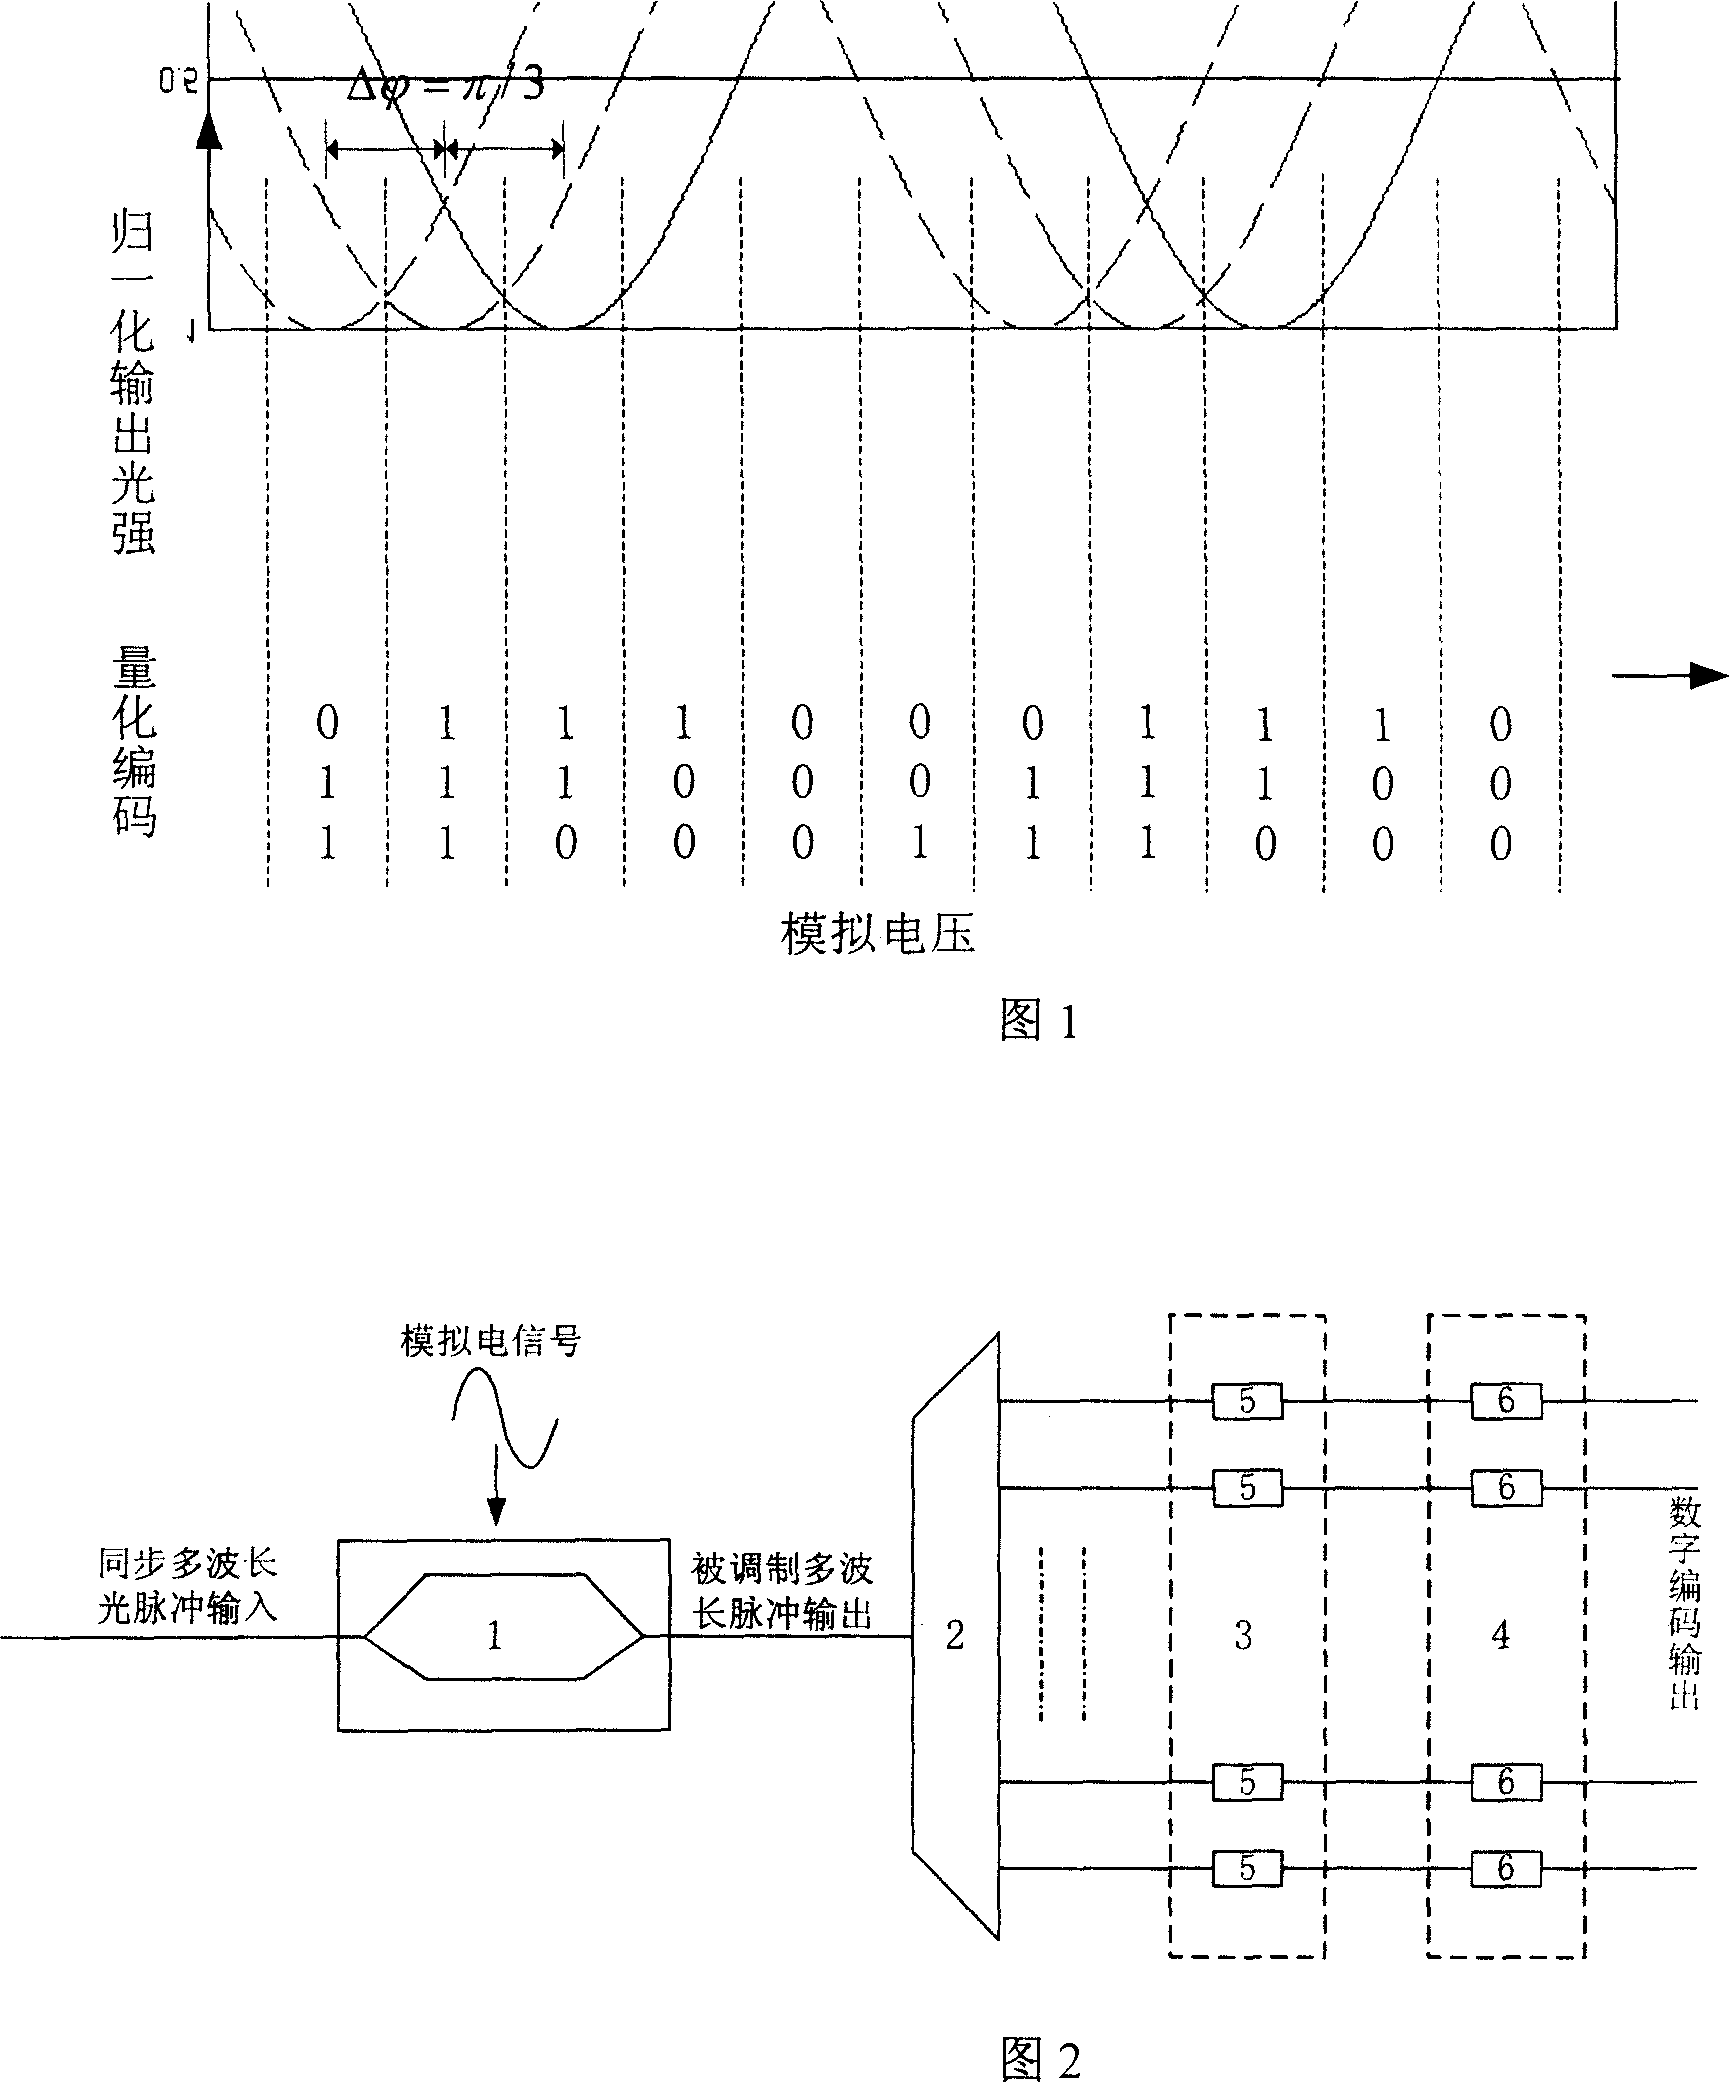 Optical A/D converter based on asymmetric Mach-Zehnder modulator